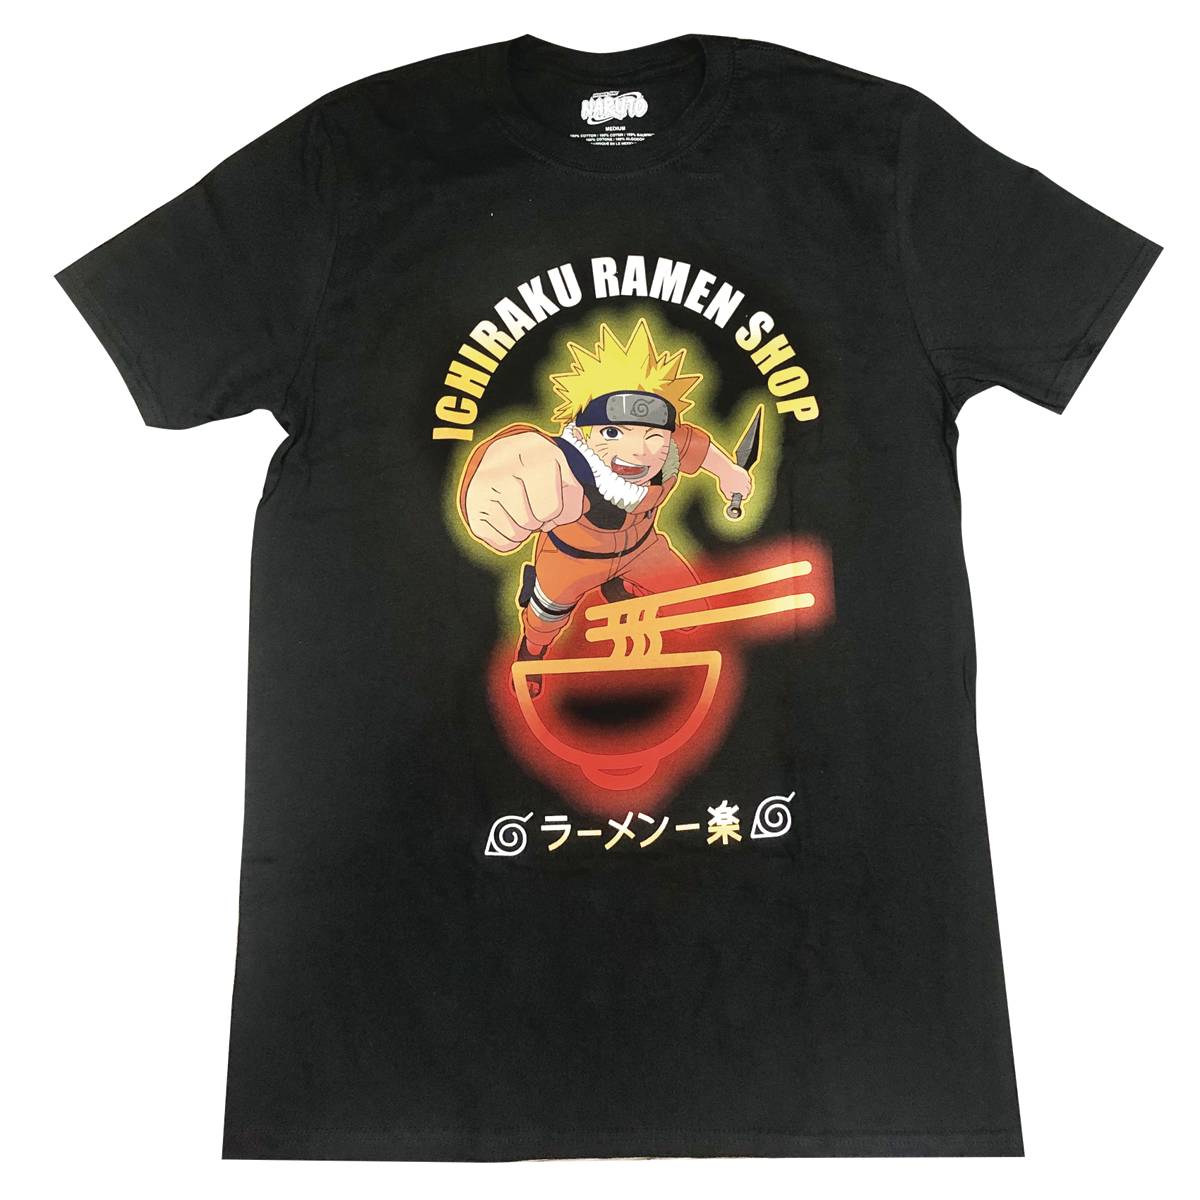 Naruto Ichiraku Ramen Shop Black T-Shirt XXL